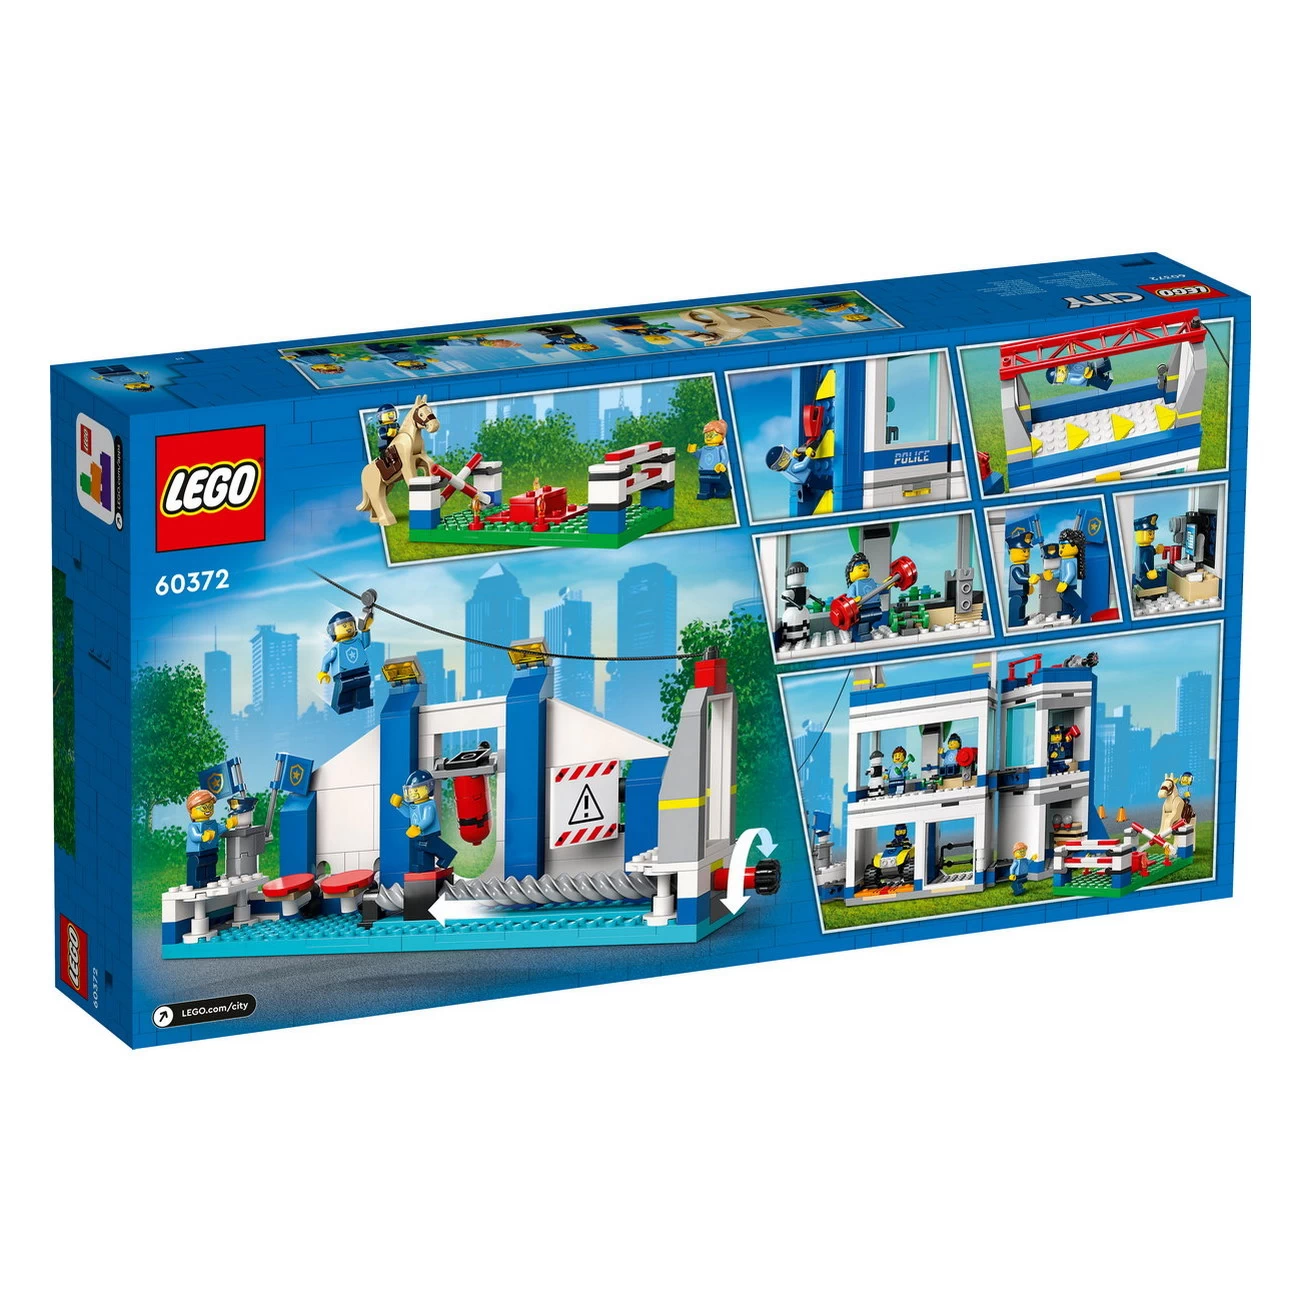 LEGO City 60372 - Polizeischule